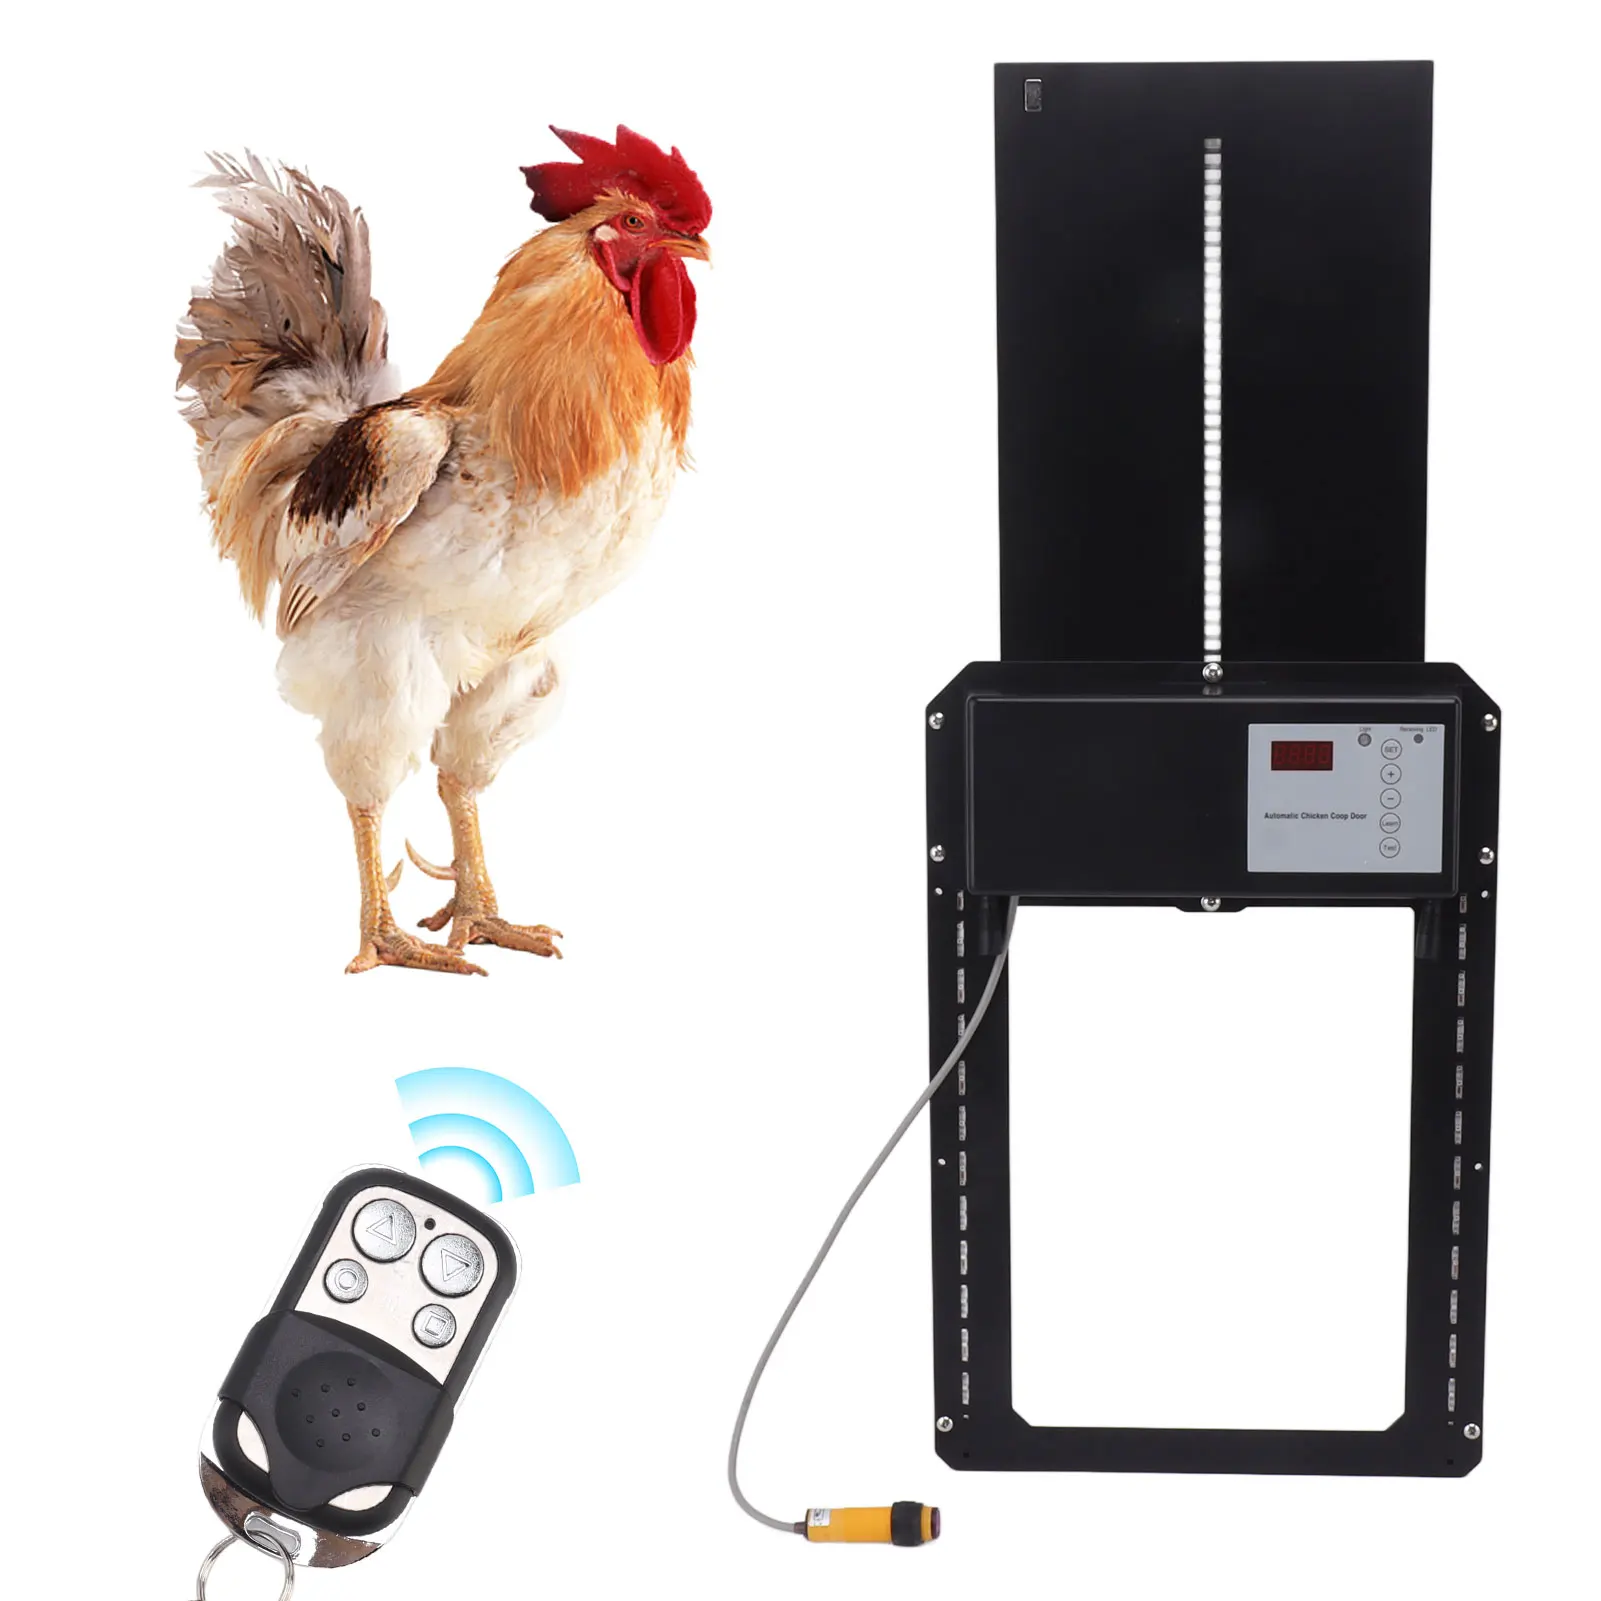 

Automatic Chicken Coop Door With Light Infrared IP44 Waterproof Anti Clamp Timer Light Sensor Remote Control Chicken Door Opener